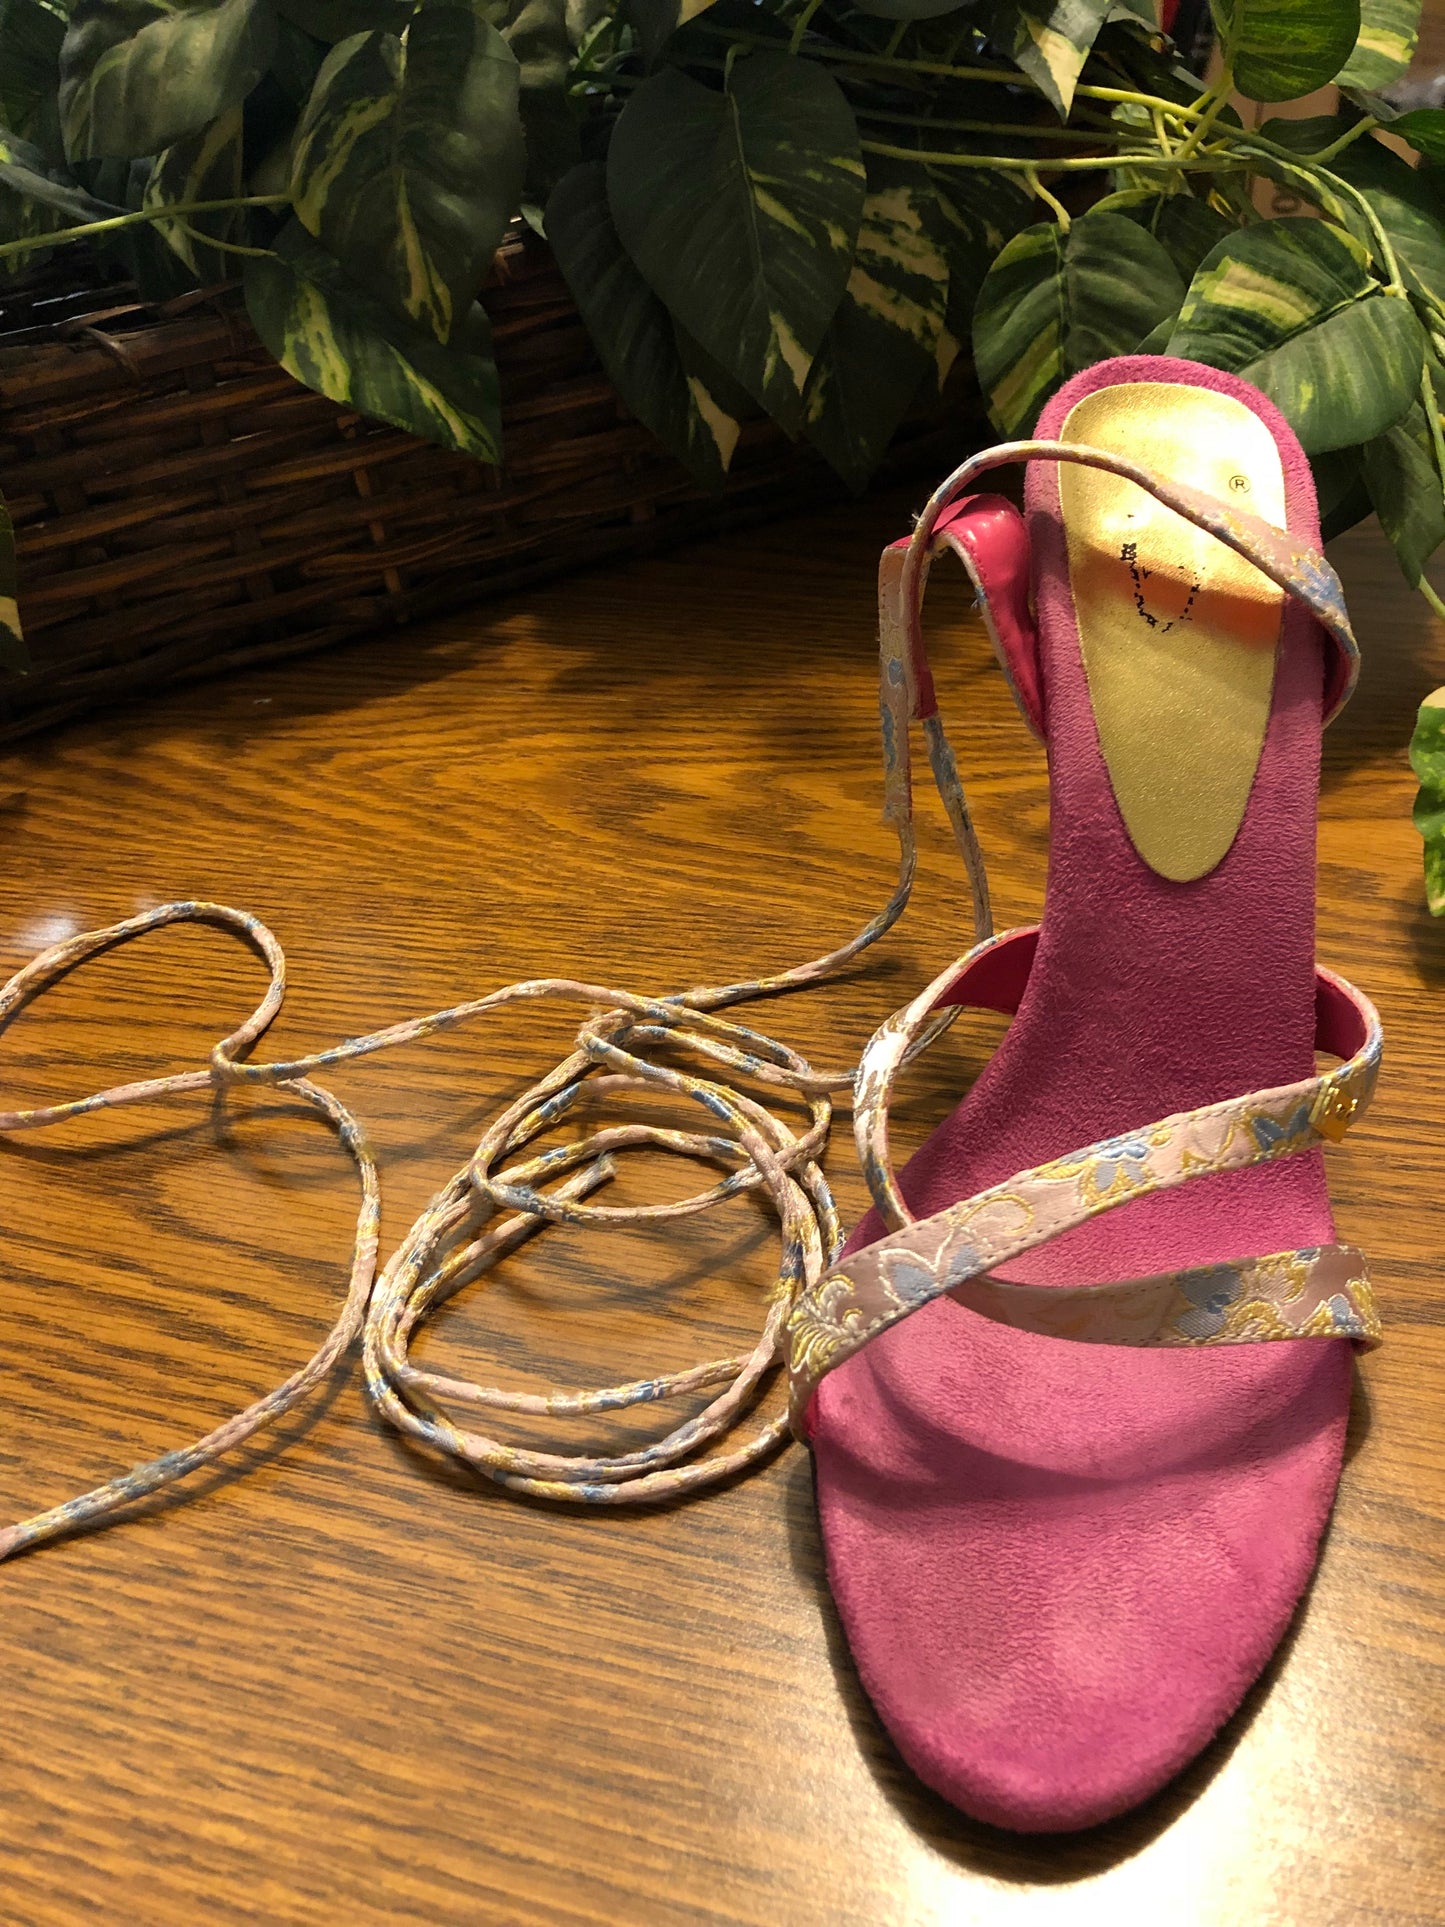 Unze Tie Up Heel Sandals - US Size 7 - Used